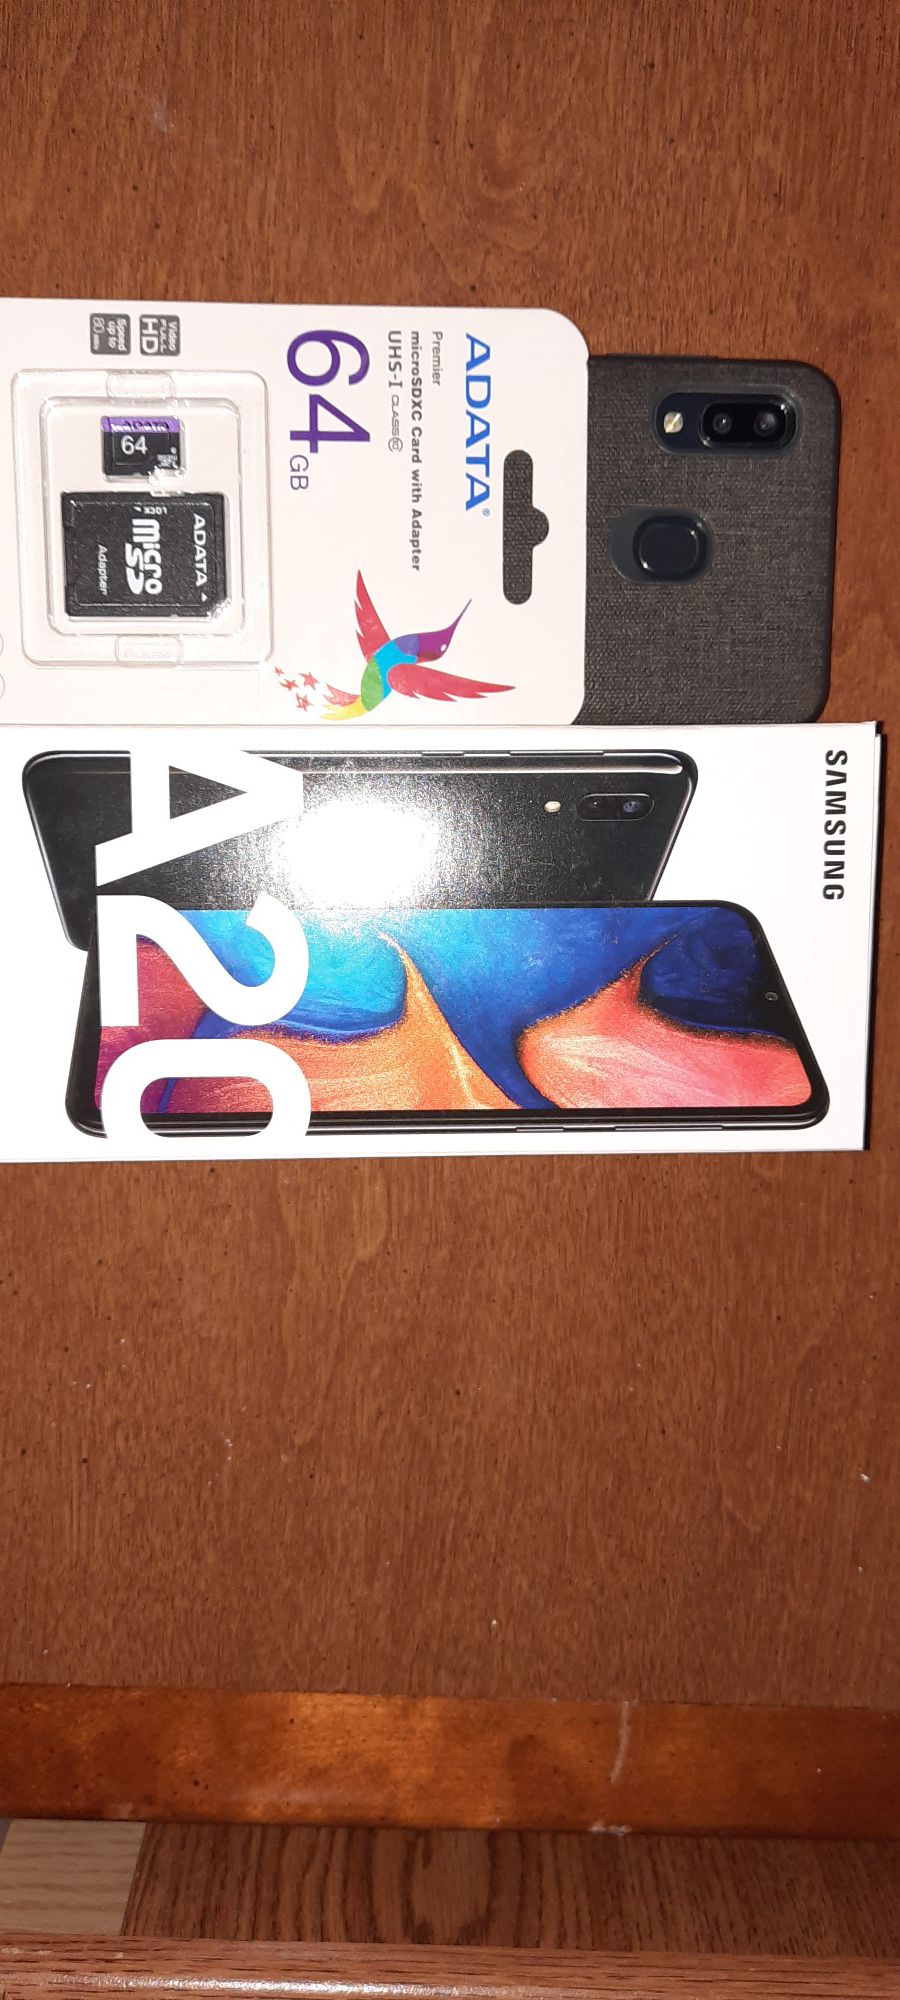 Samsung Galaxy a20 eth 64GB sd card works with metro